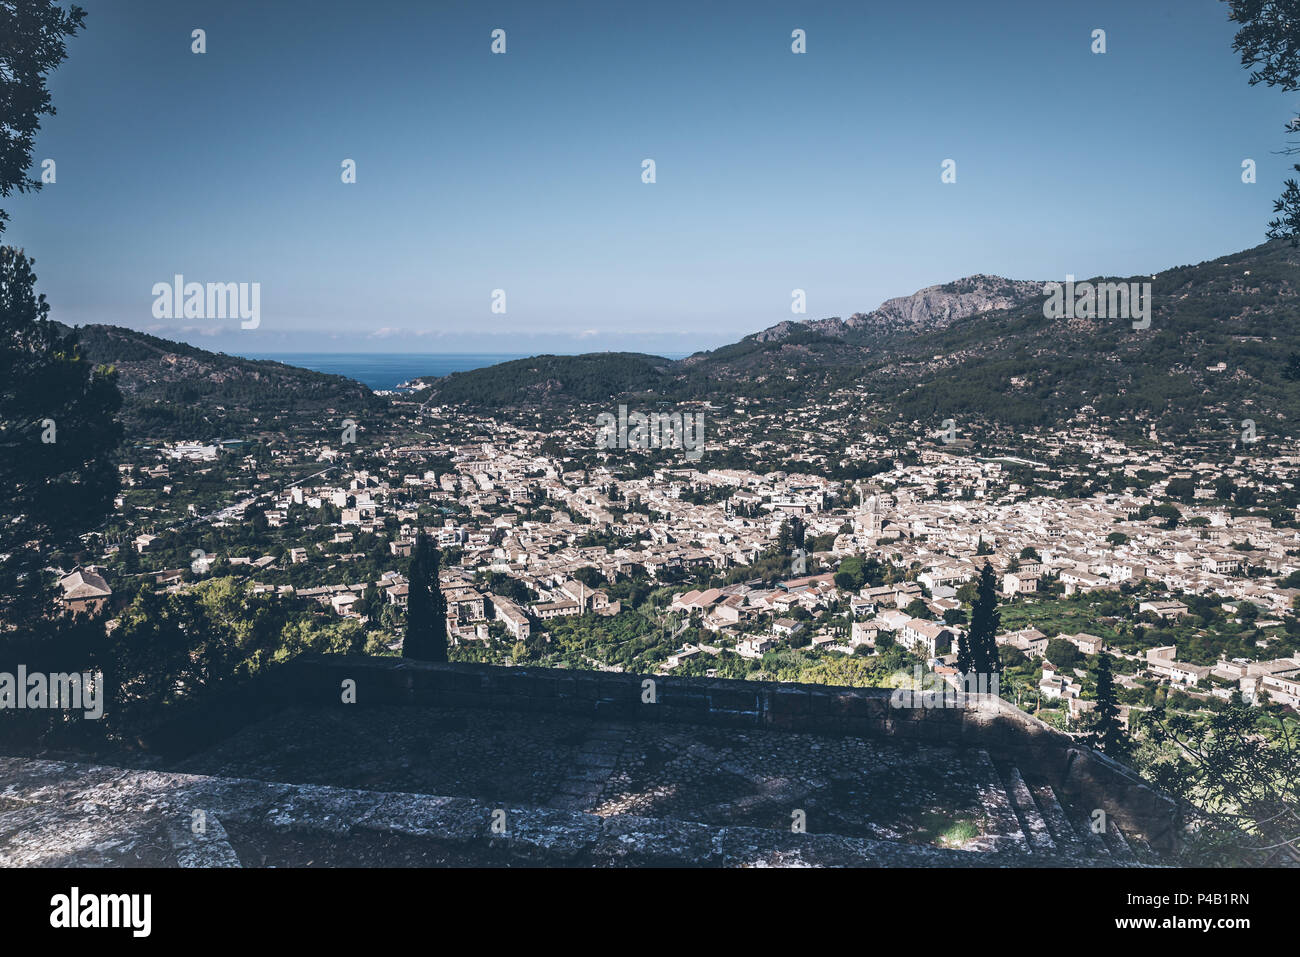 Un alto ángulo de visualización de la ciudad de Sóller, Mallorca Foto de stock